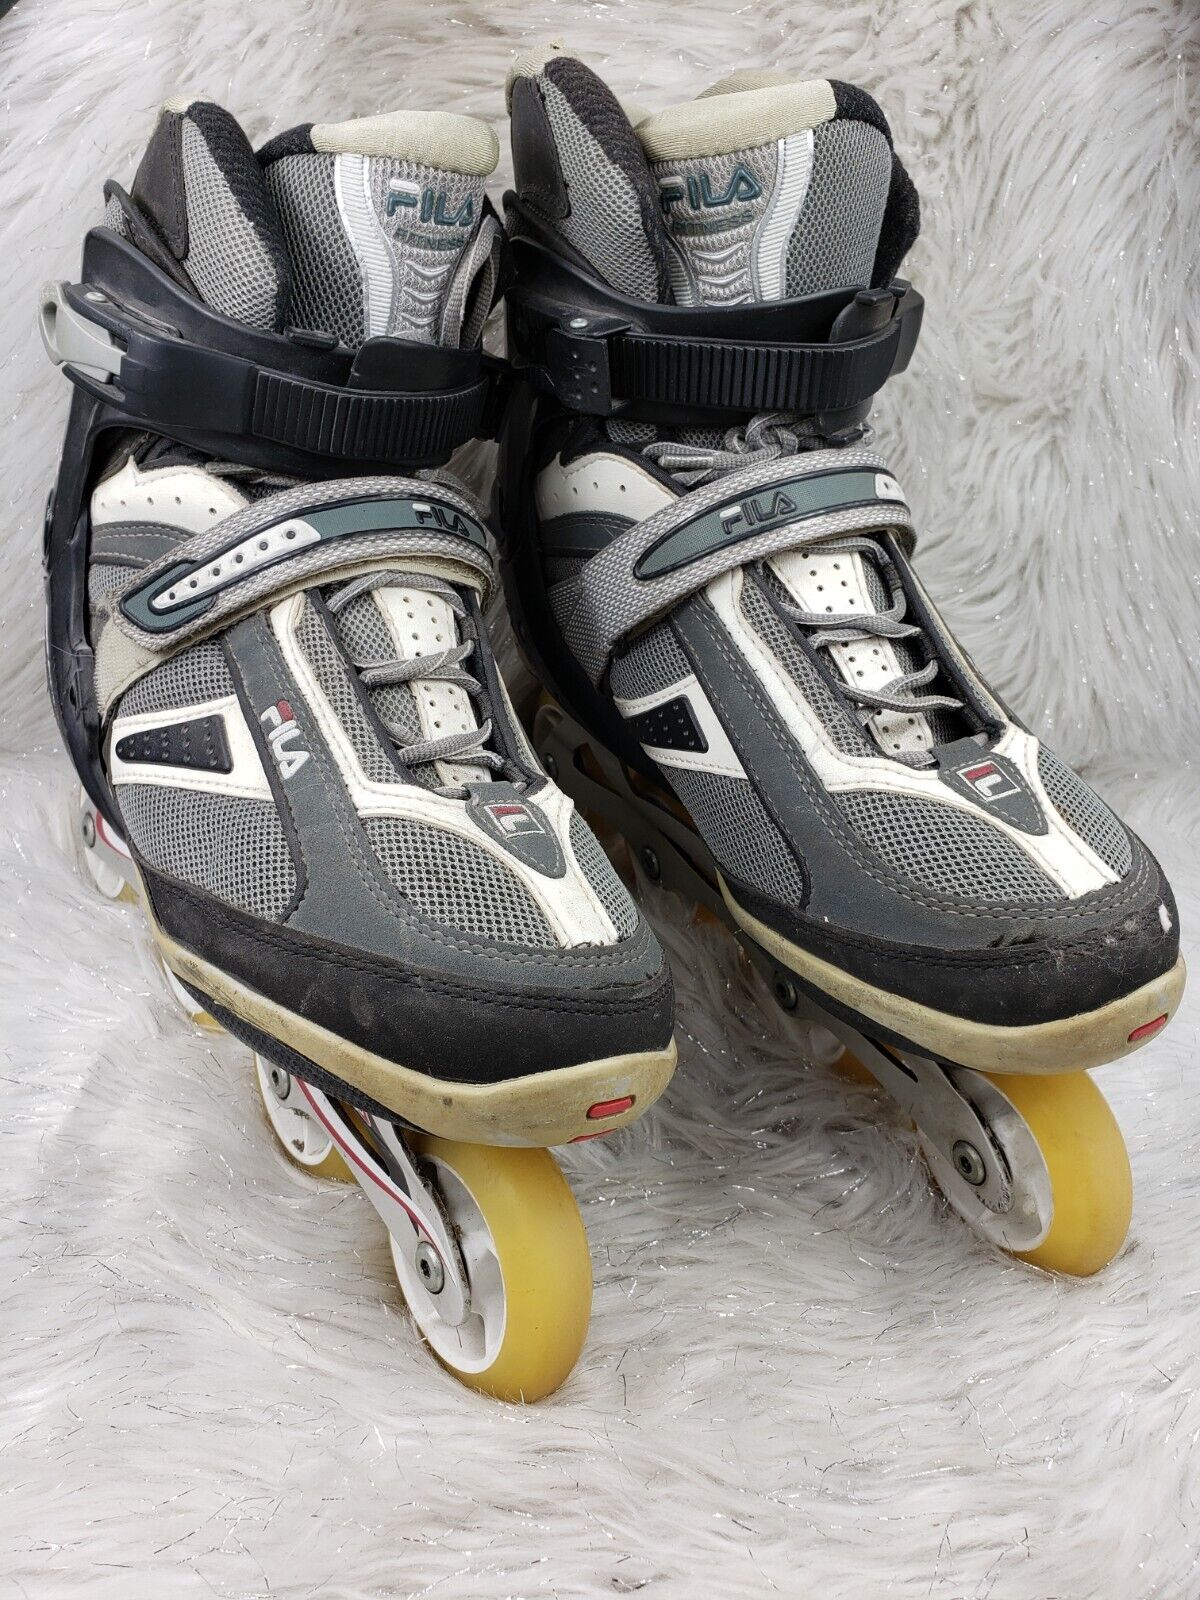 Landelijk deed het Subsidie FILA Helix Wave Abec 5 Black Gray Roller Blades Skates Mens Size US 11 EUR  44 | eBay